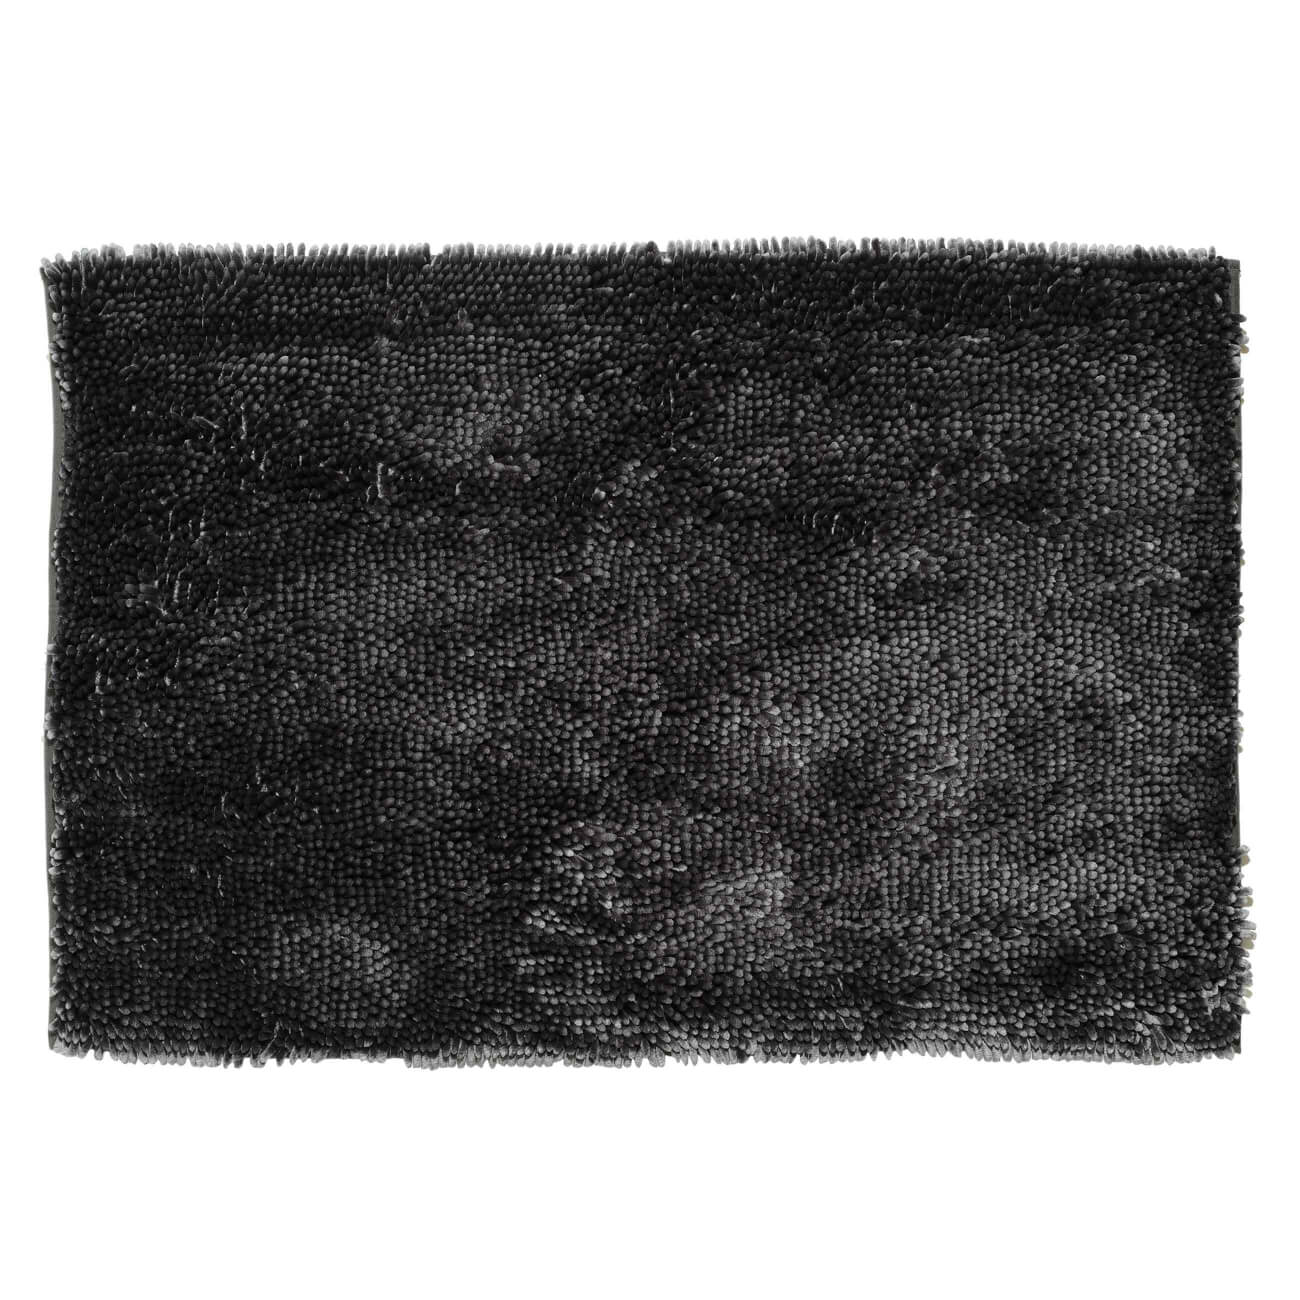 Коврик, 65х100 см, противоскользящий, полиэстер, темно-серый, Fluffy коврик для животных eva ячеиистый 27 х 34 см